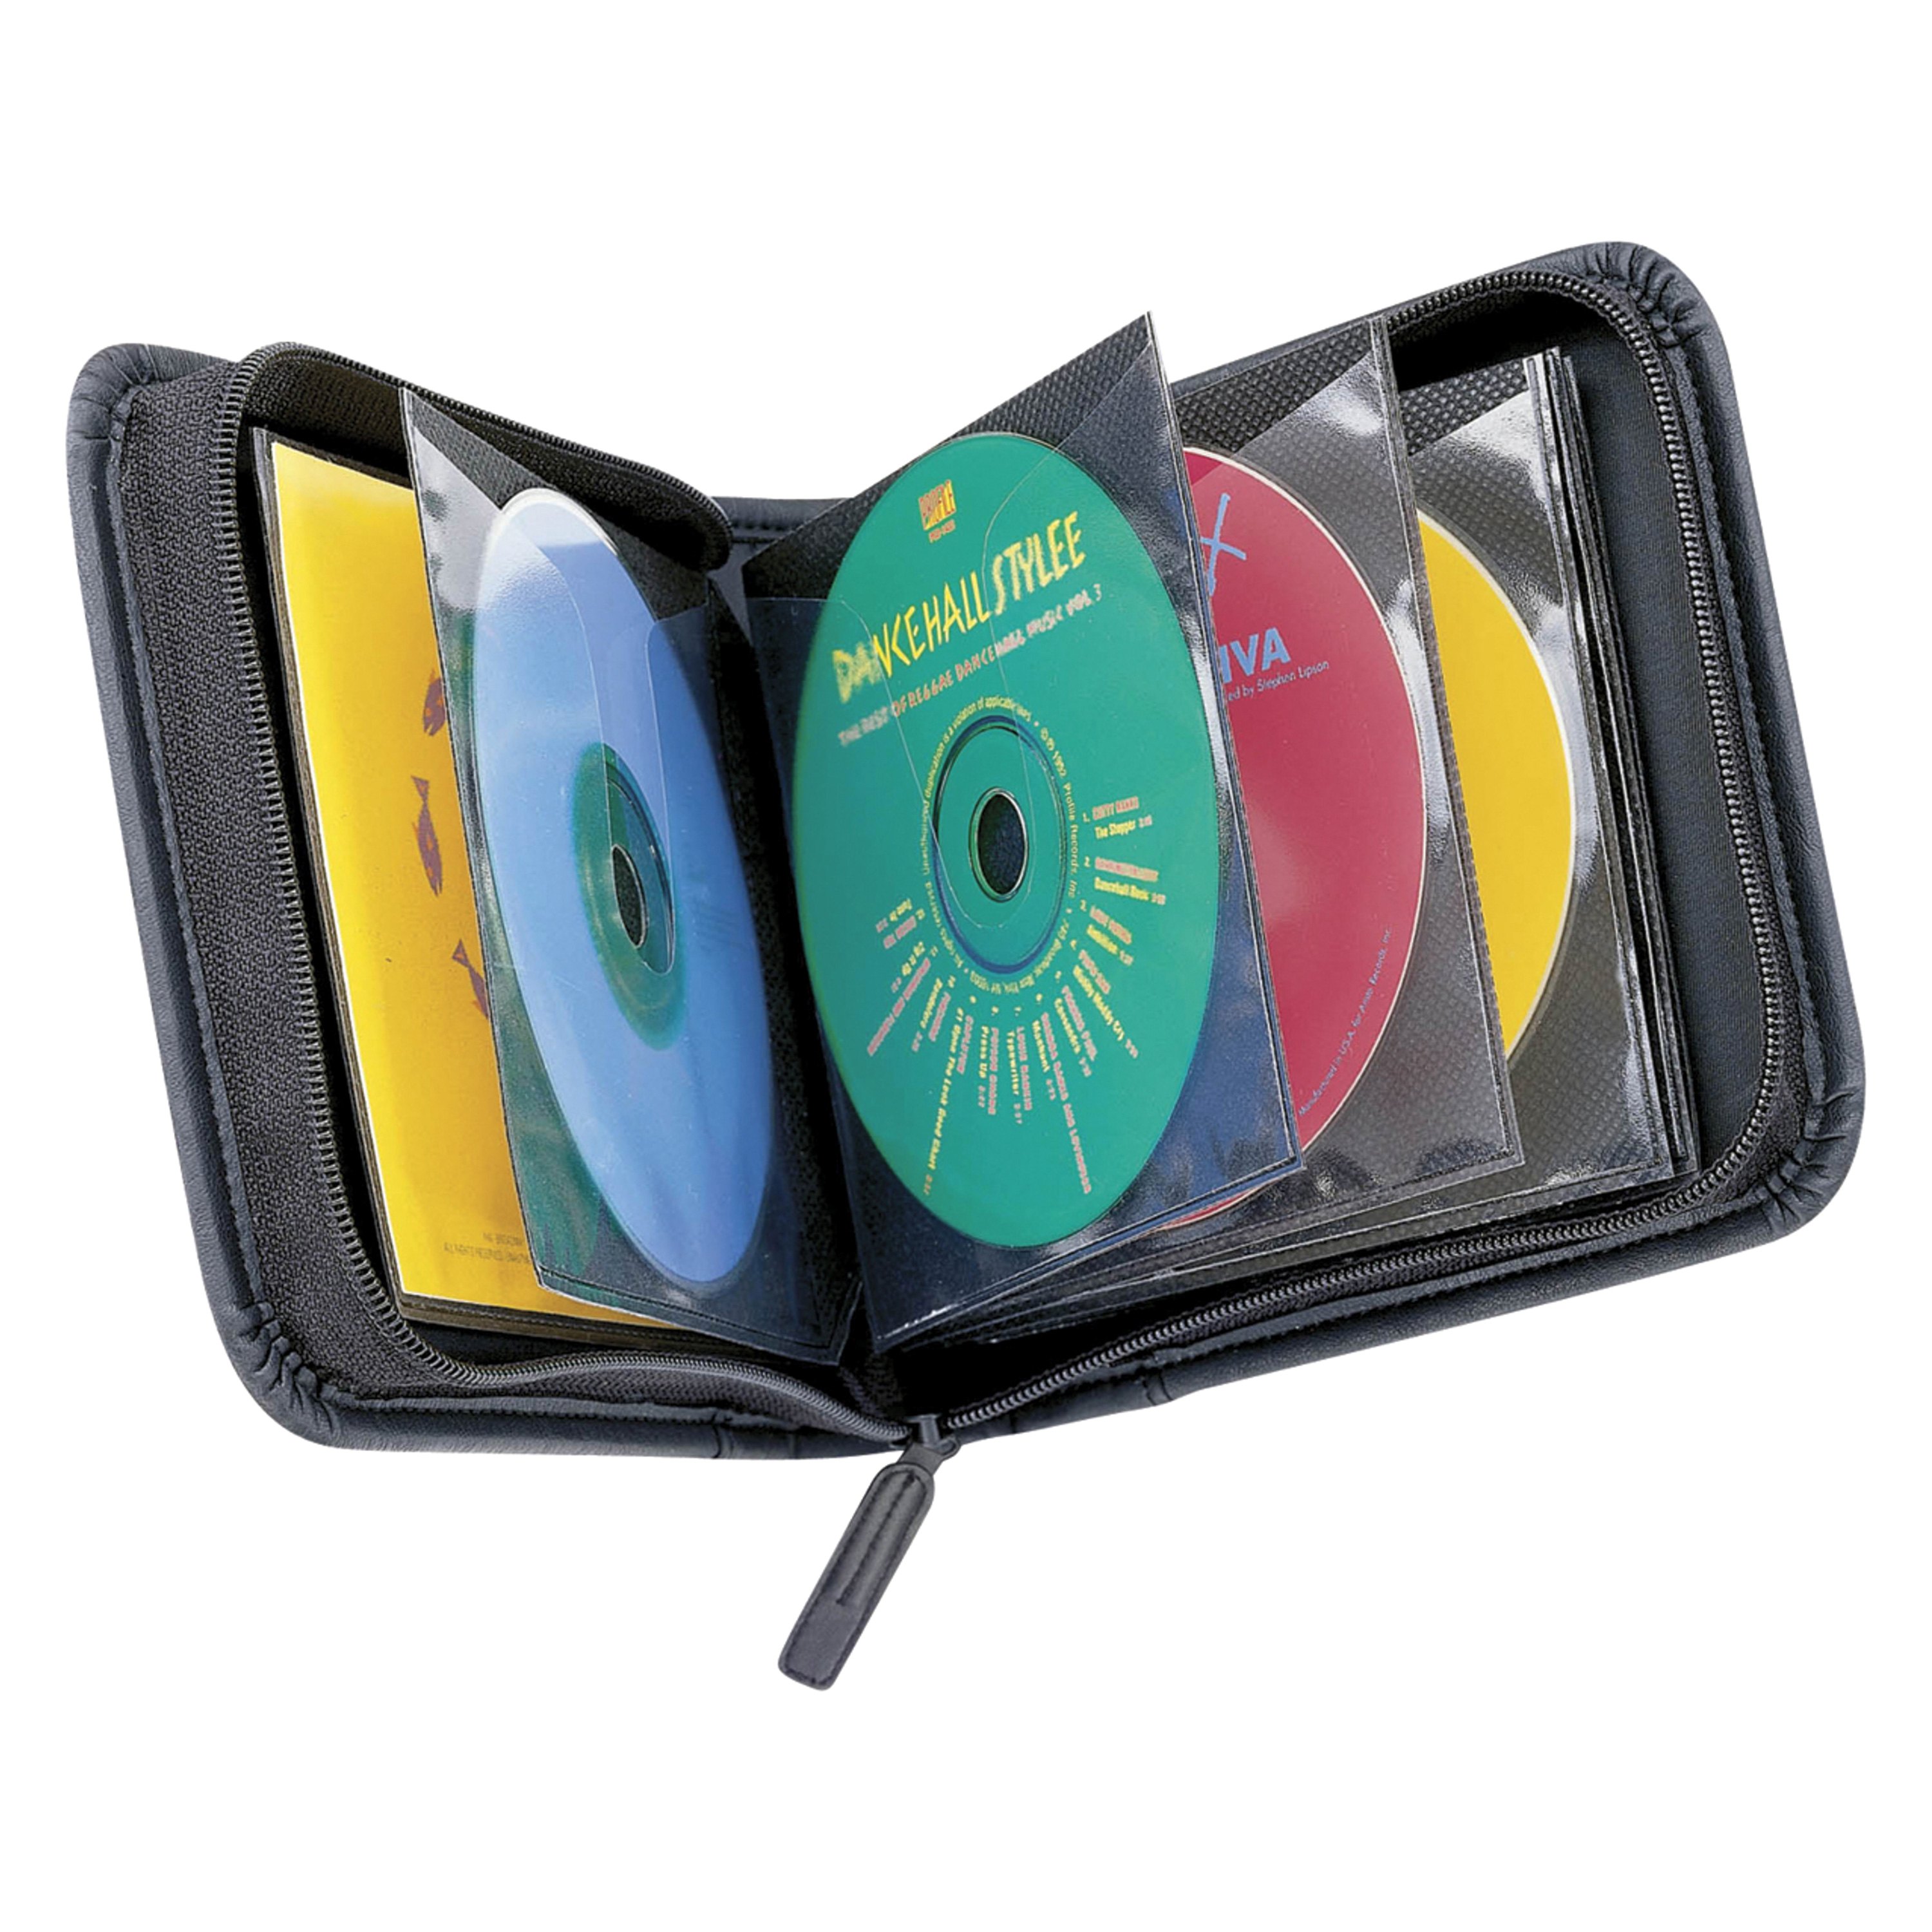 Интернет магазины сд. Кейс Лоджик для CD дисков. Сумка для CD/DVD CASELOGIC. Сумка для CD/DVD (на 40 дисков). Кейс для дисков Hama DVD.